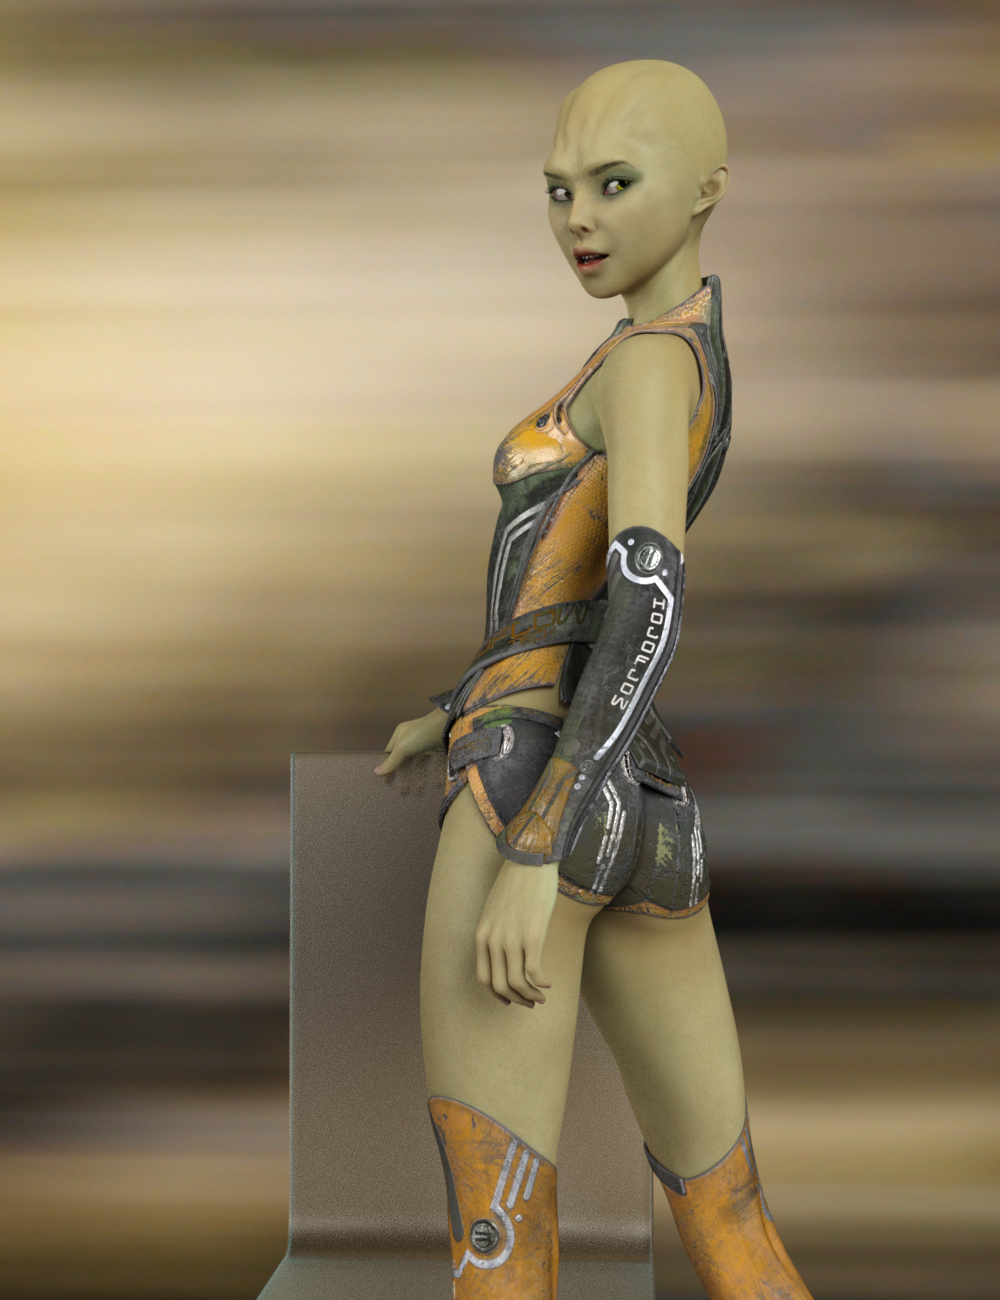 Kozue for Genesis 8 Female by: Warloc, 3D Models by Daz 3D